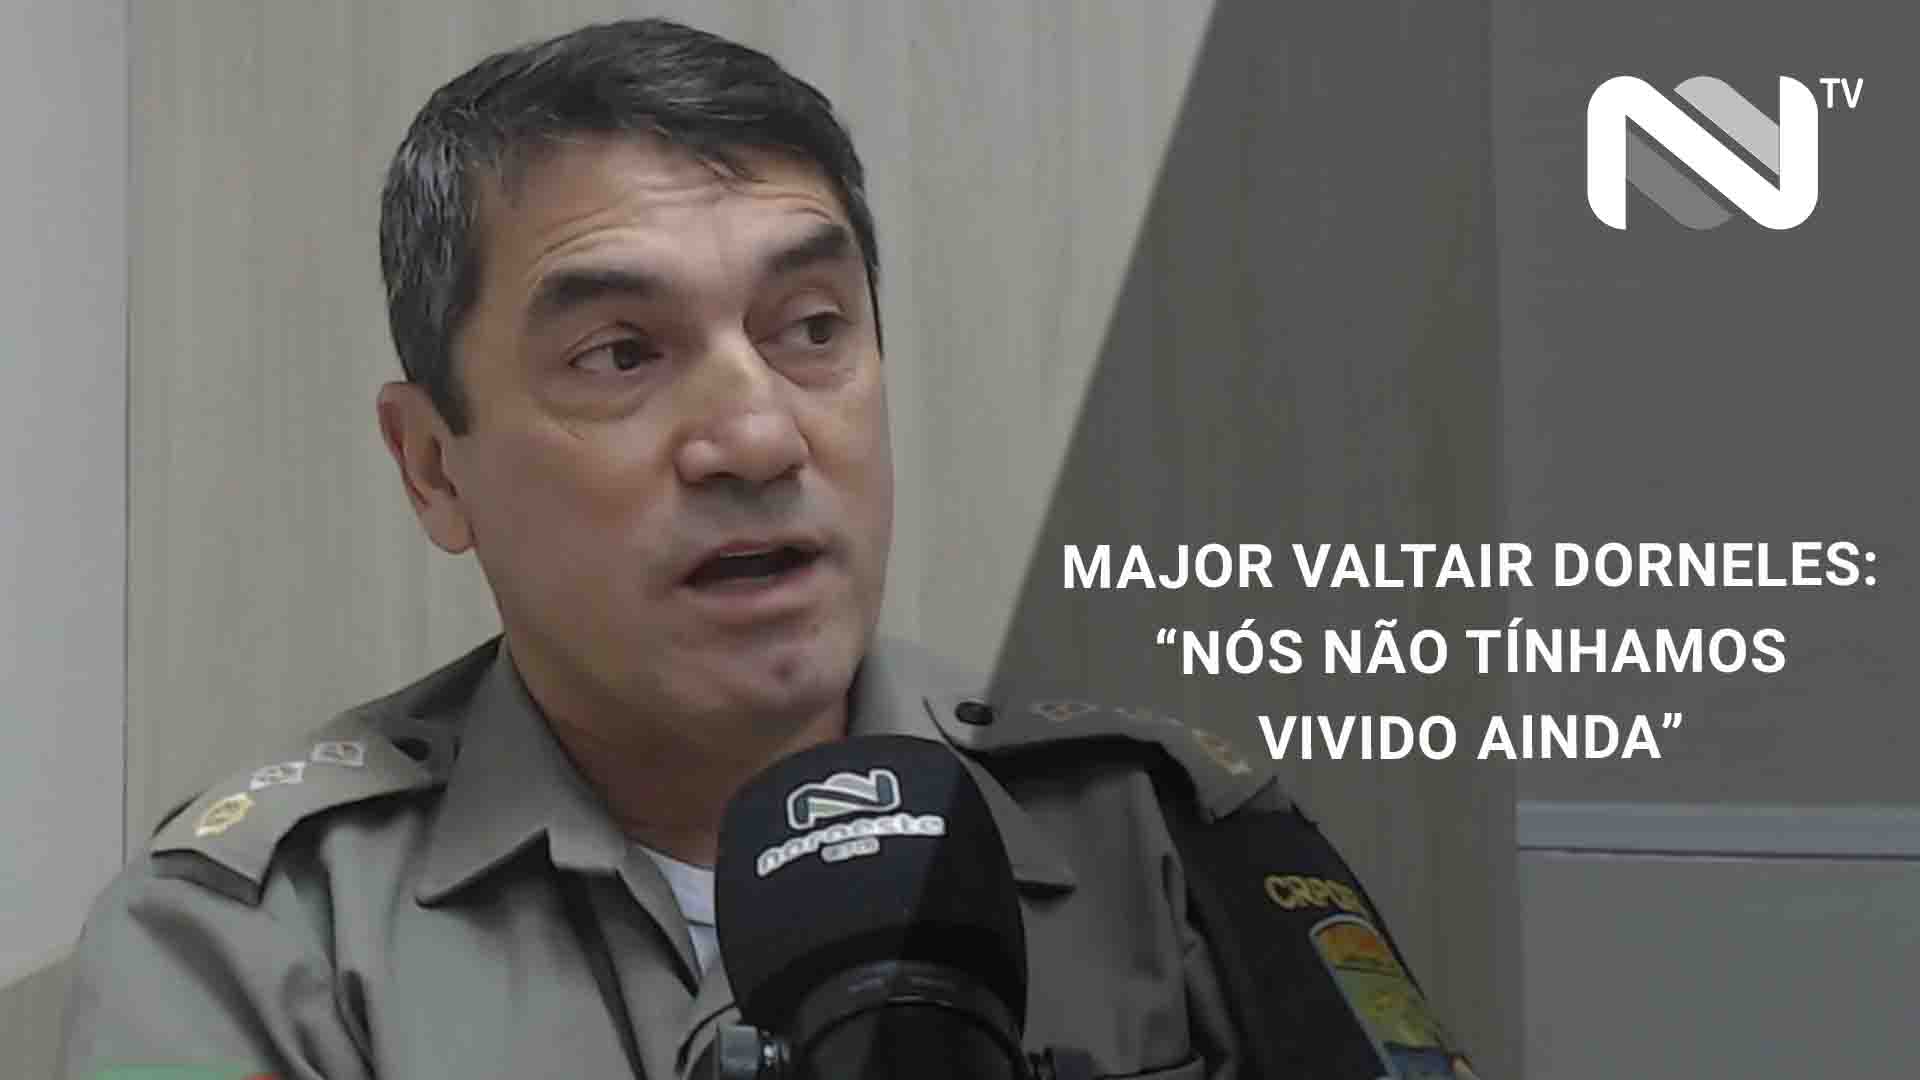  Major Valtair Dorneles avalia a escalada de Fake News em Santa Rosa/RS